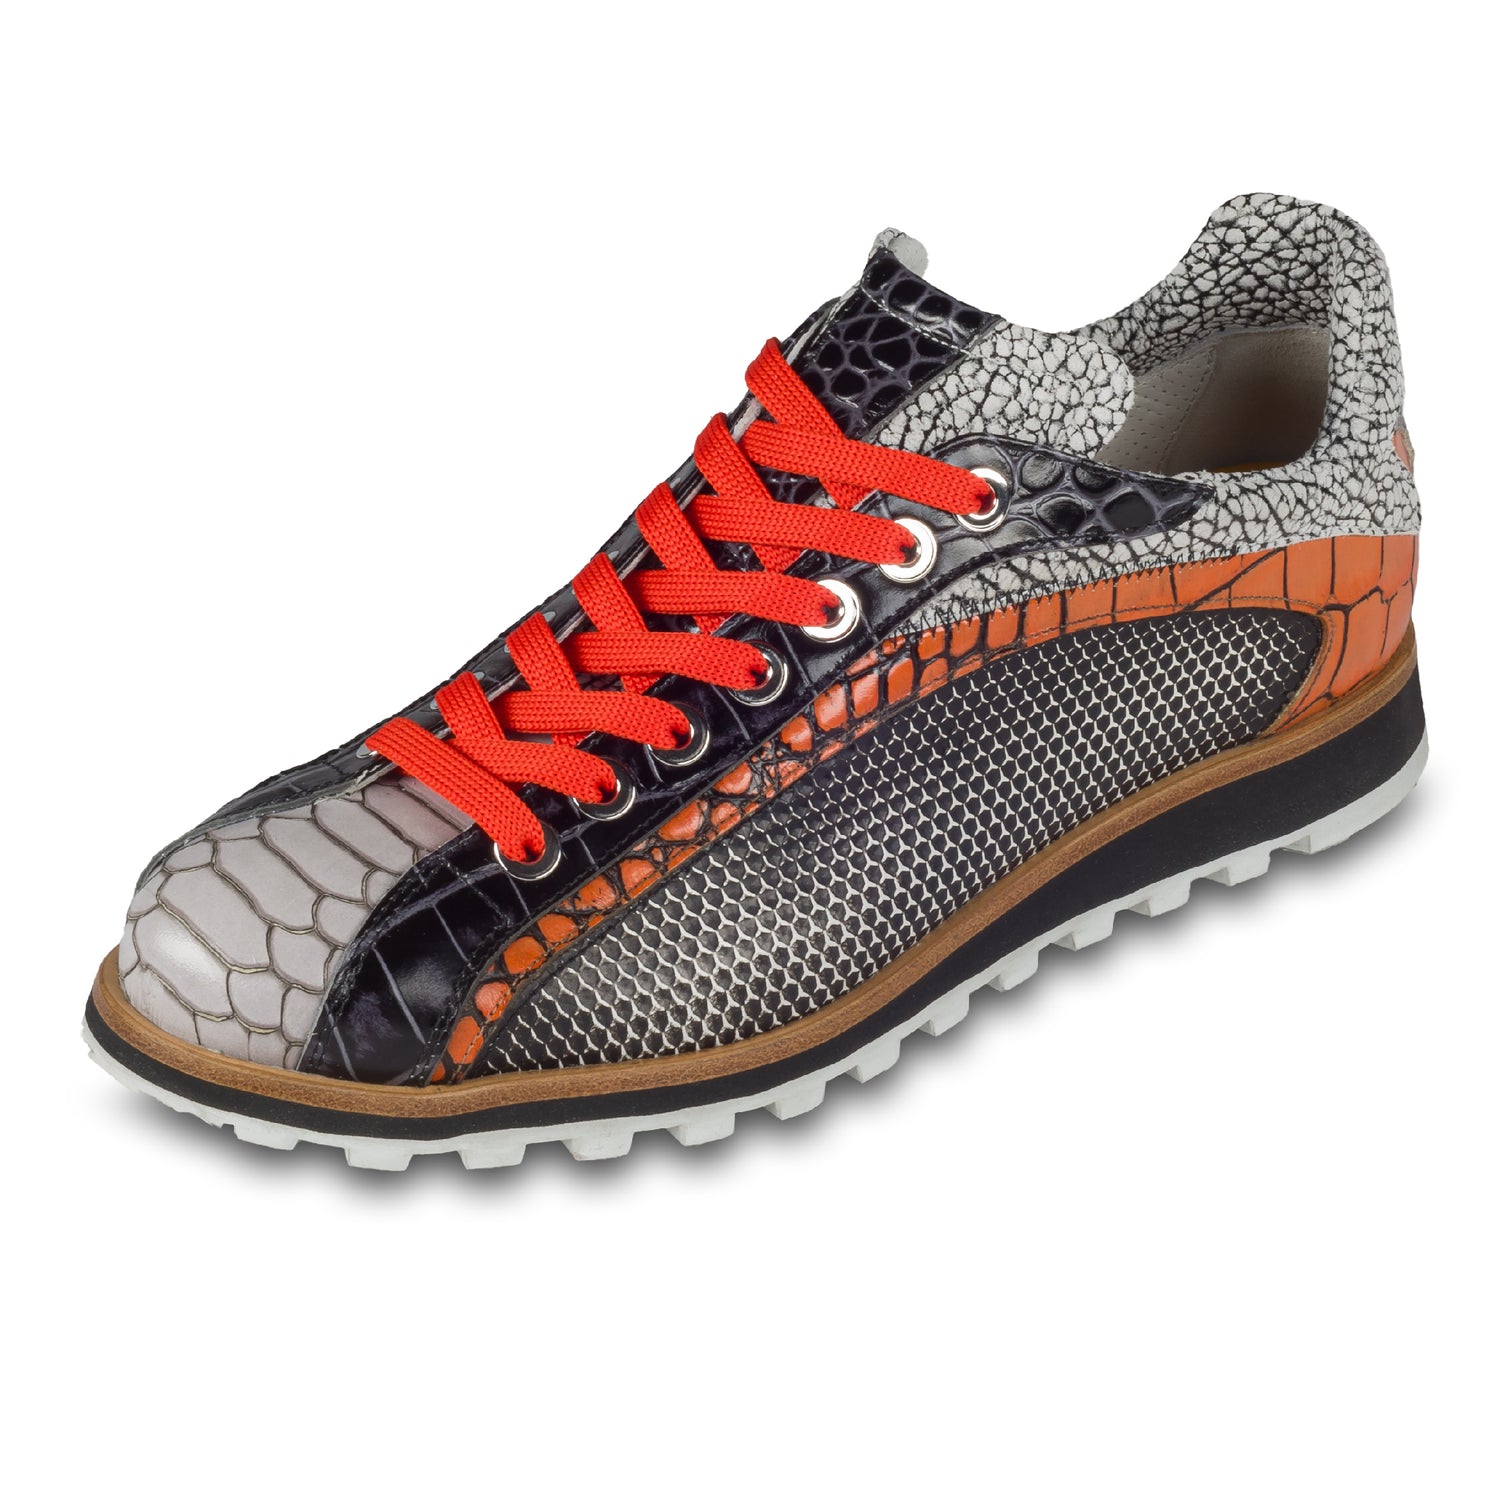 Lorenzi Herren Leder-Sneaker mit raffinierter Prägung in schwarz / weiß / orange. Handgefertigt. Schräge Ansicht linker Schuh. Schnürsenkel in leuchtend orange.